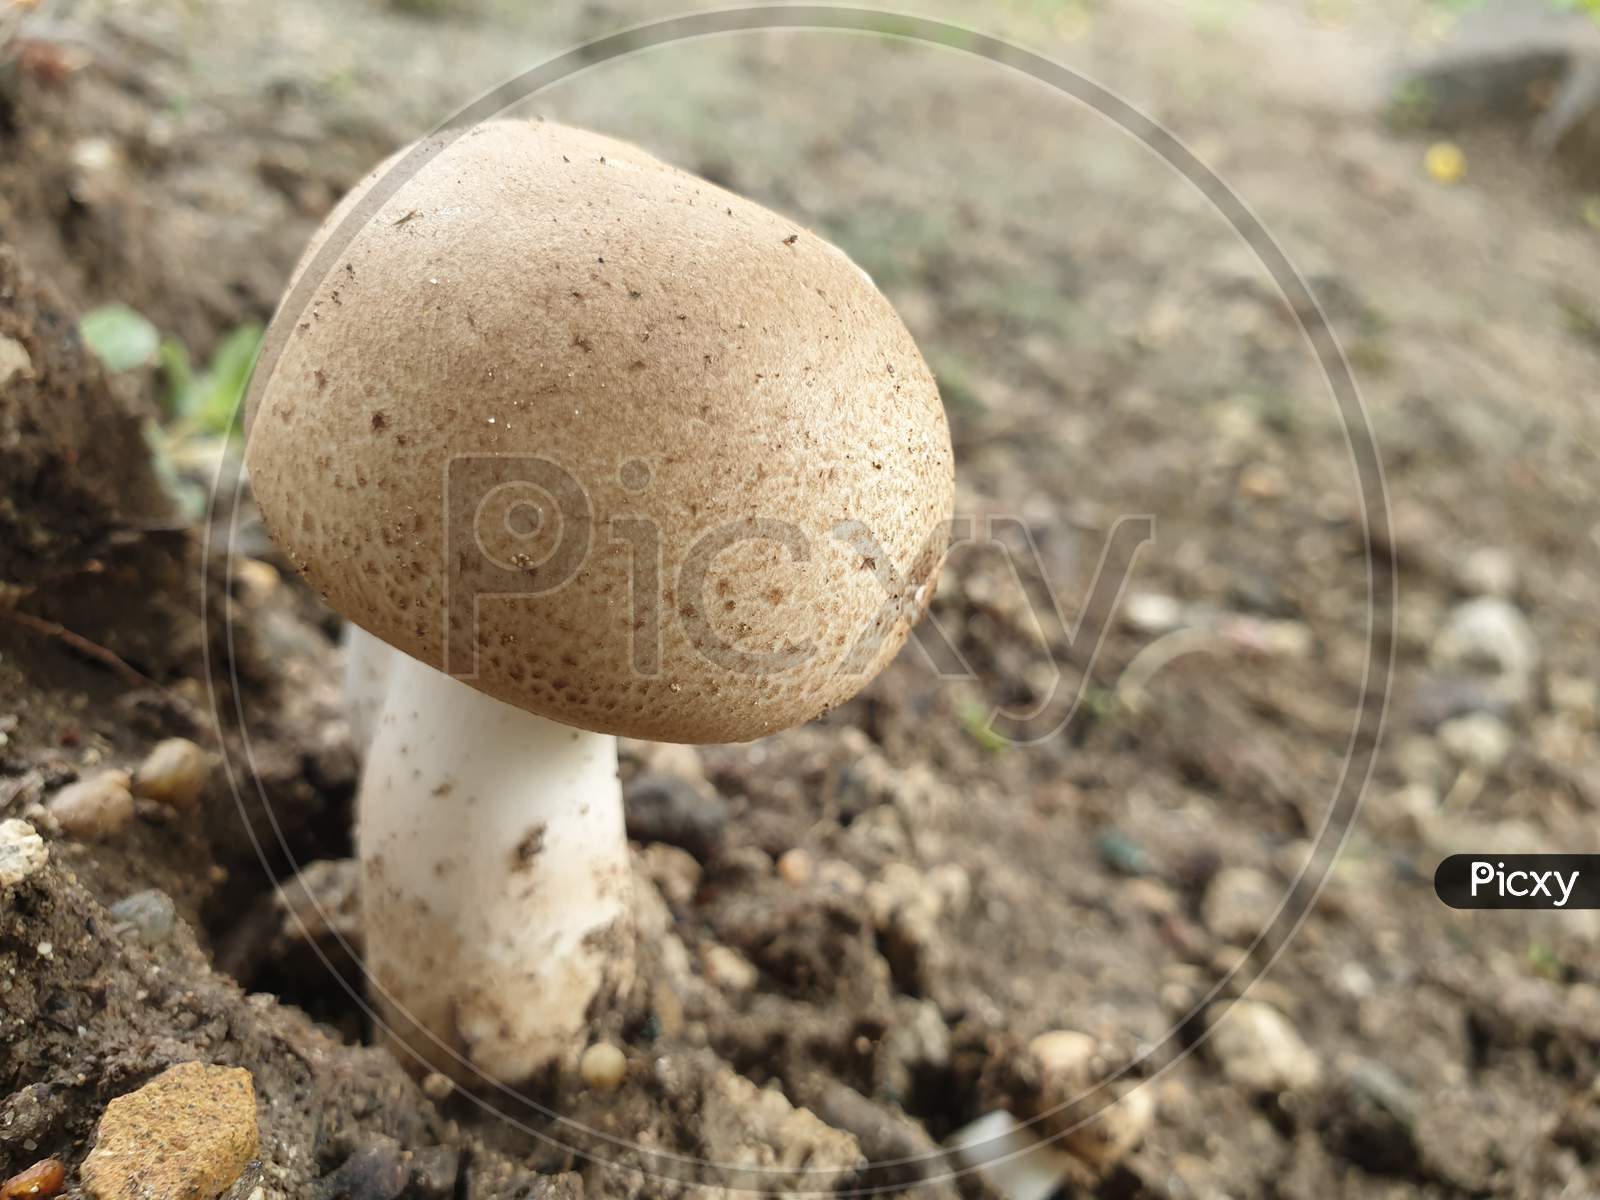 This is mushroom